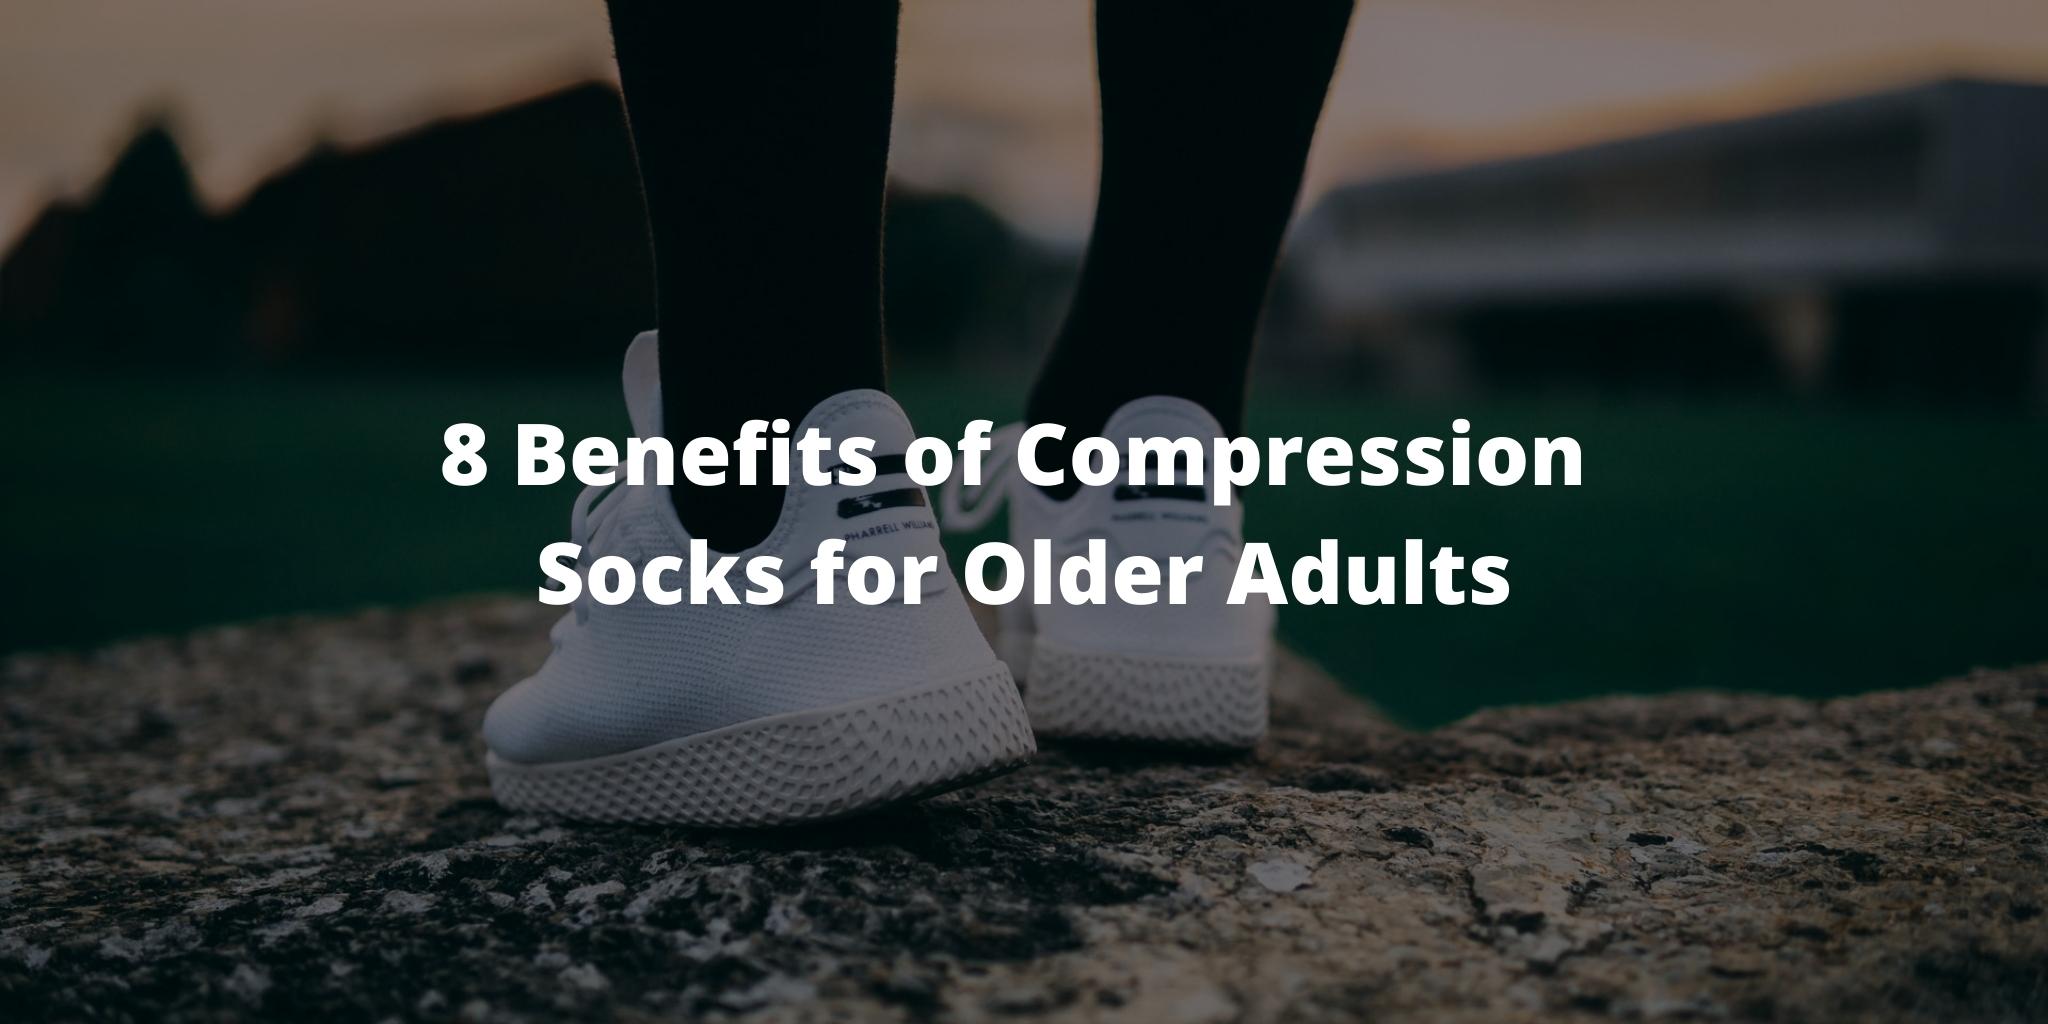 8 Benefits of Compression Socks for Older Adults